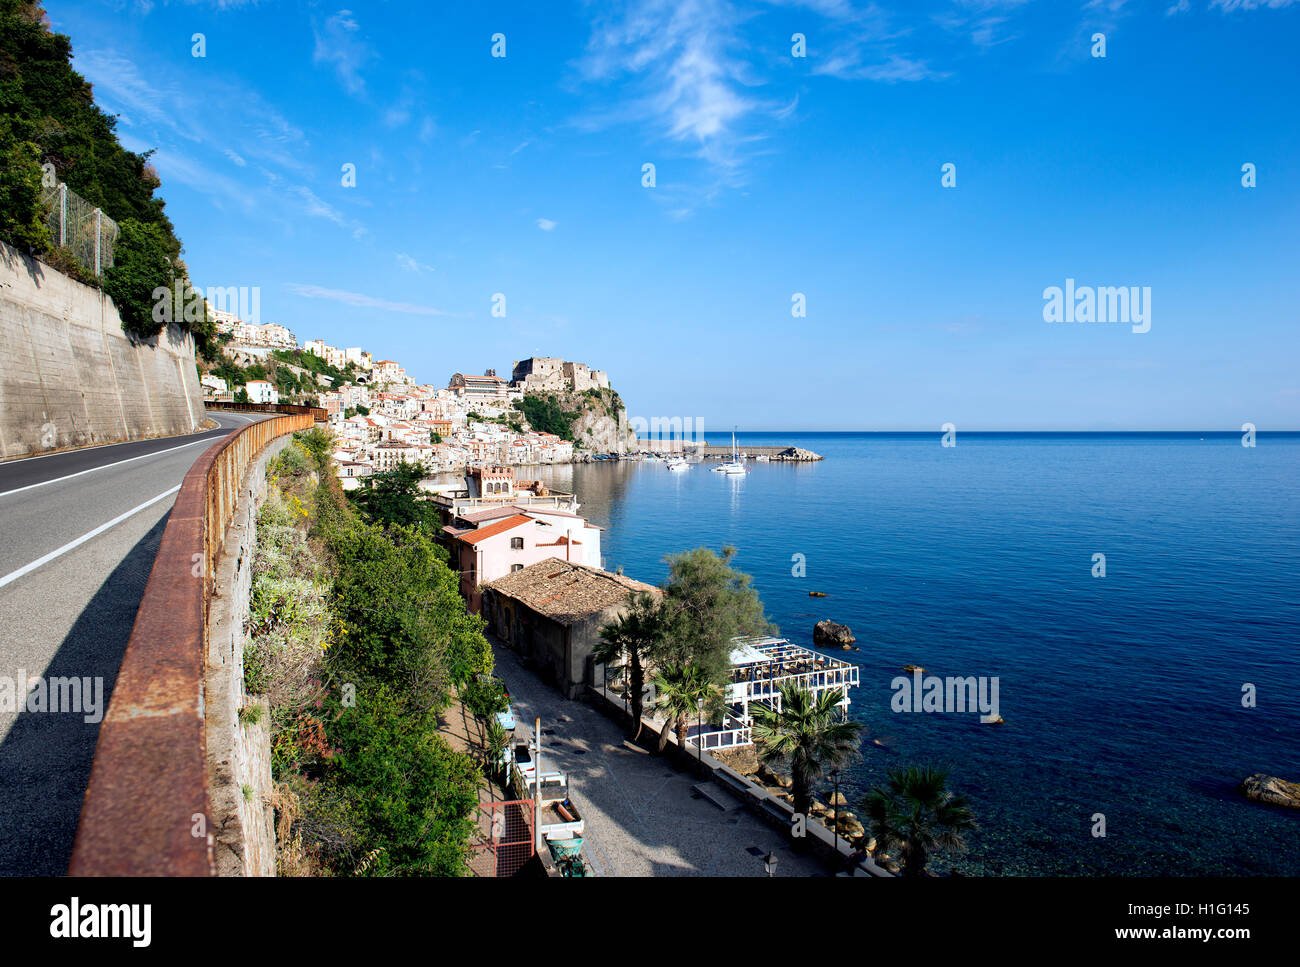 Vista di stretto di Messina visto dalla Calabria Foto Stock